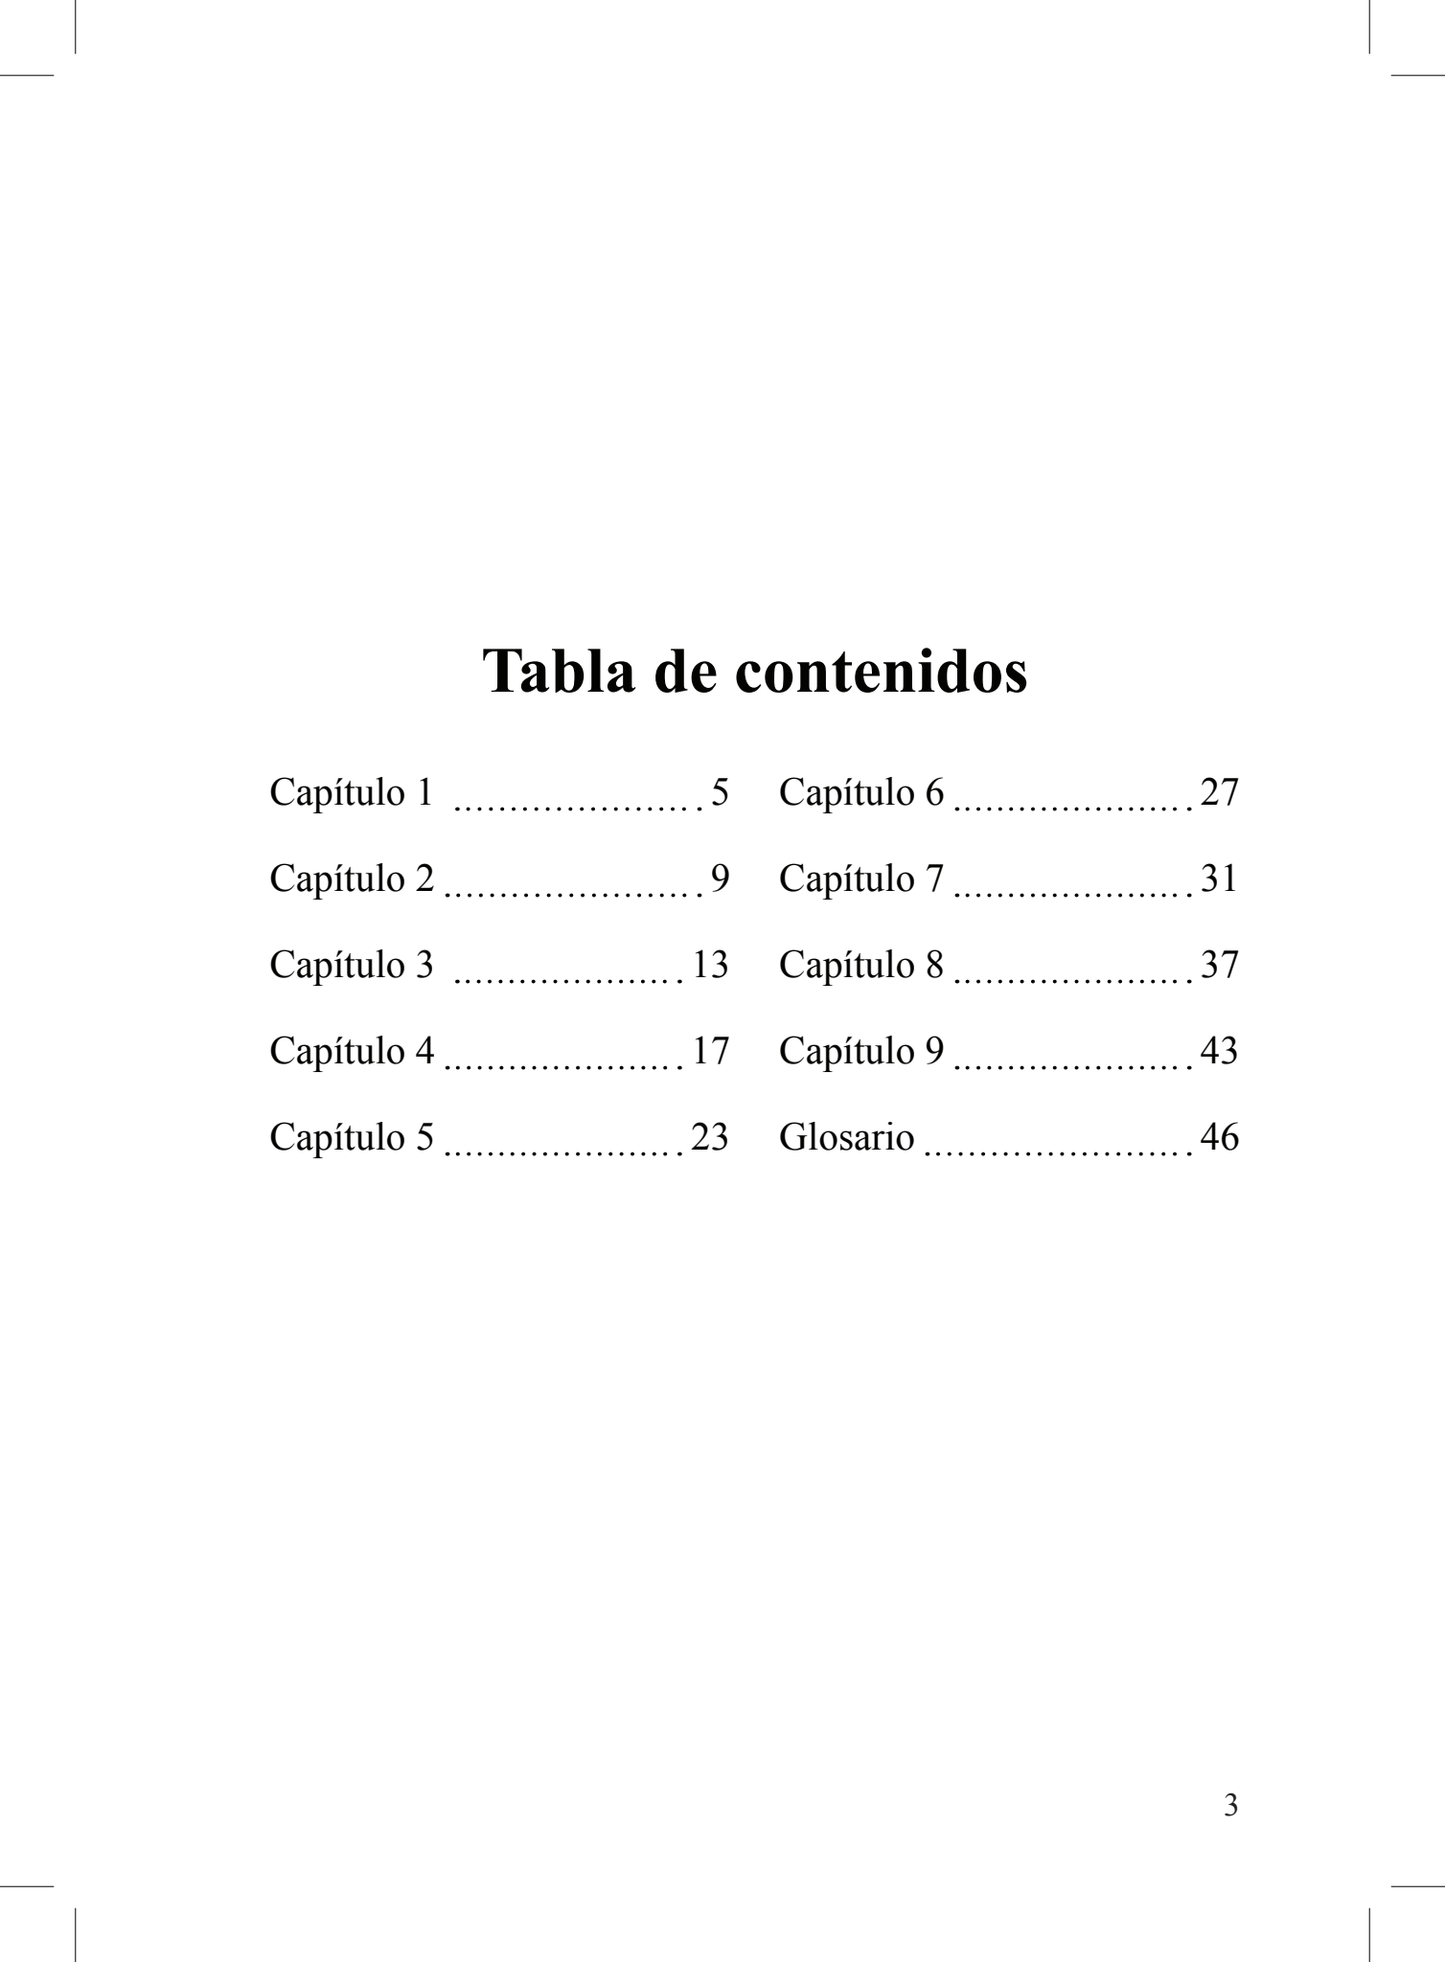 Perdidos en la traducción - Level 1 - Spanish